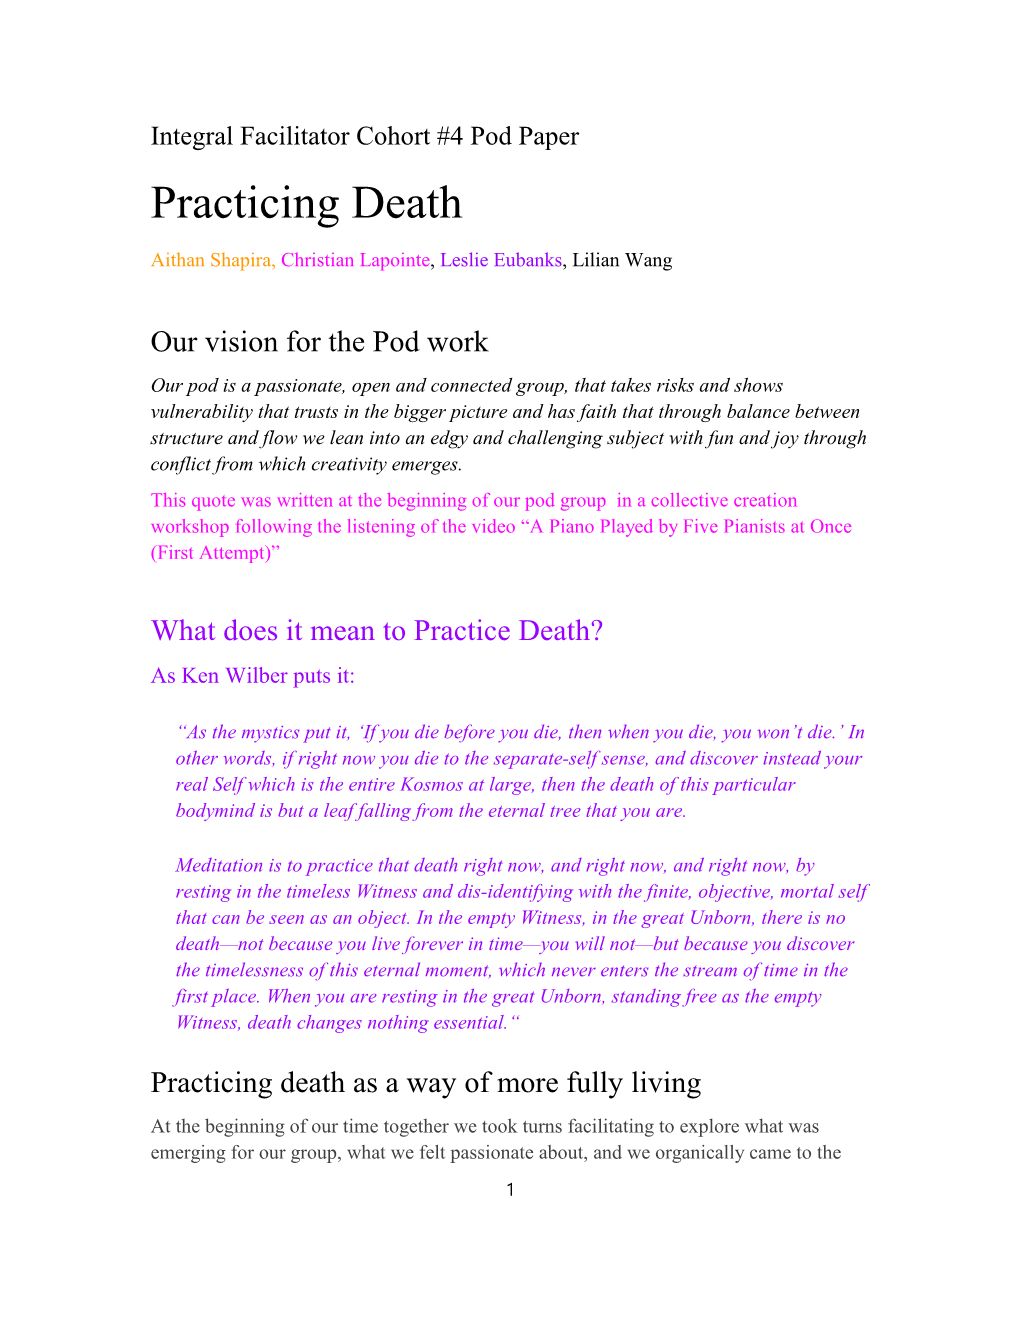 Practicing Death